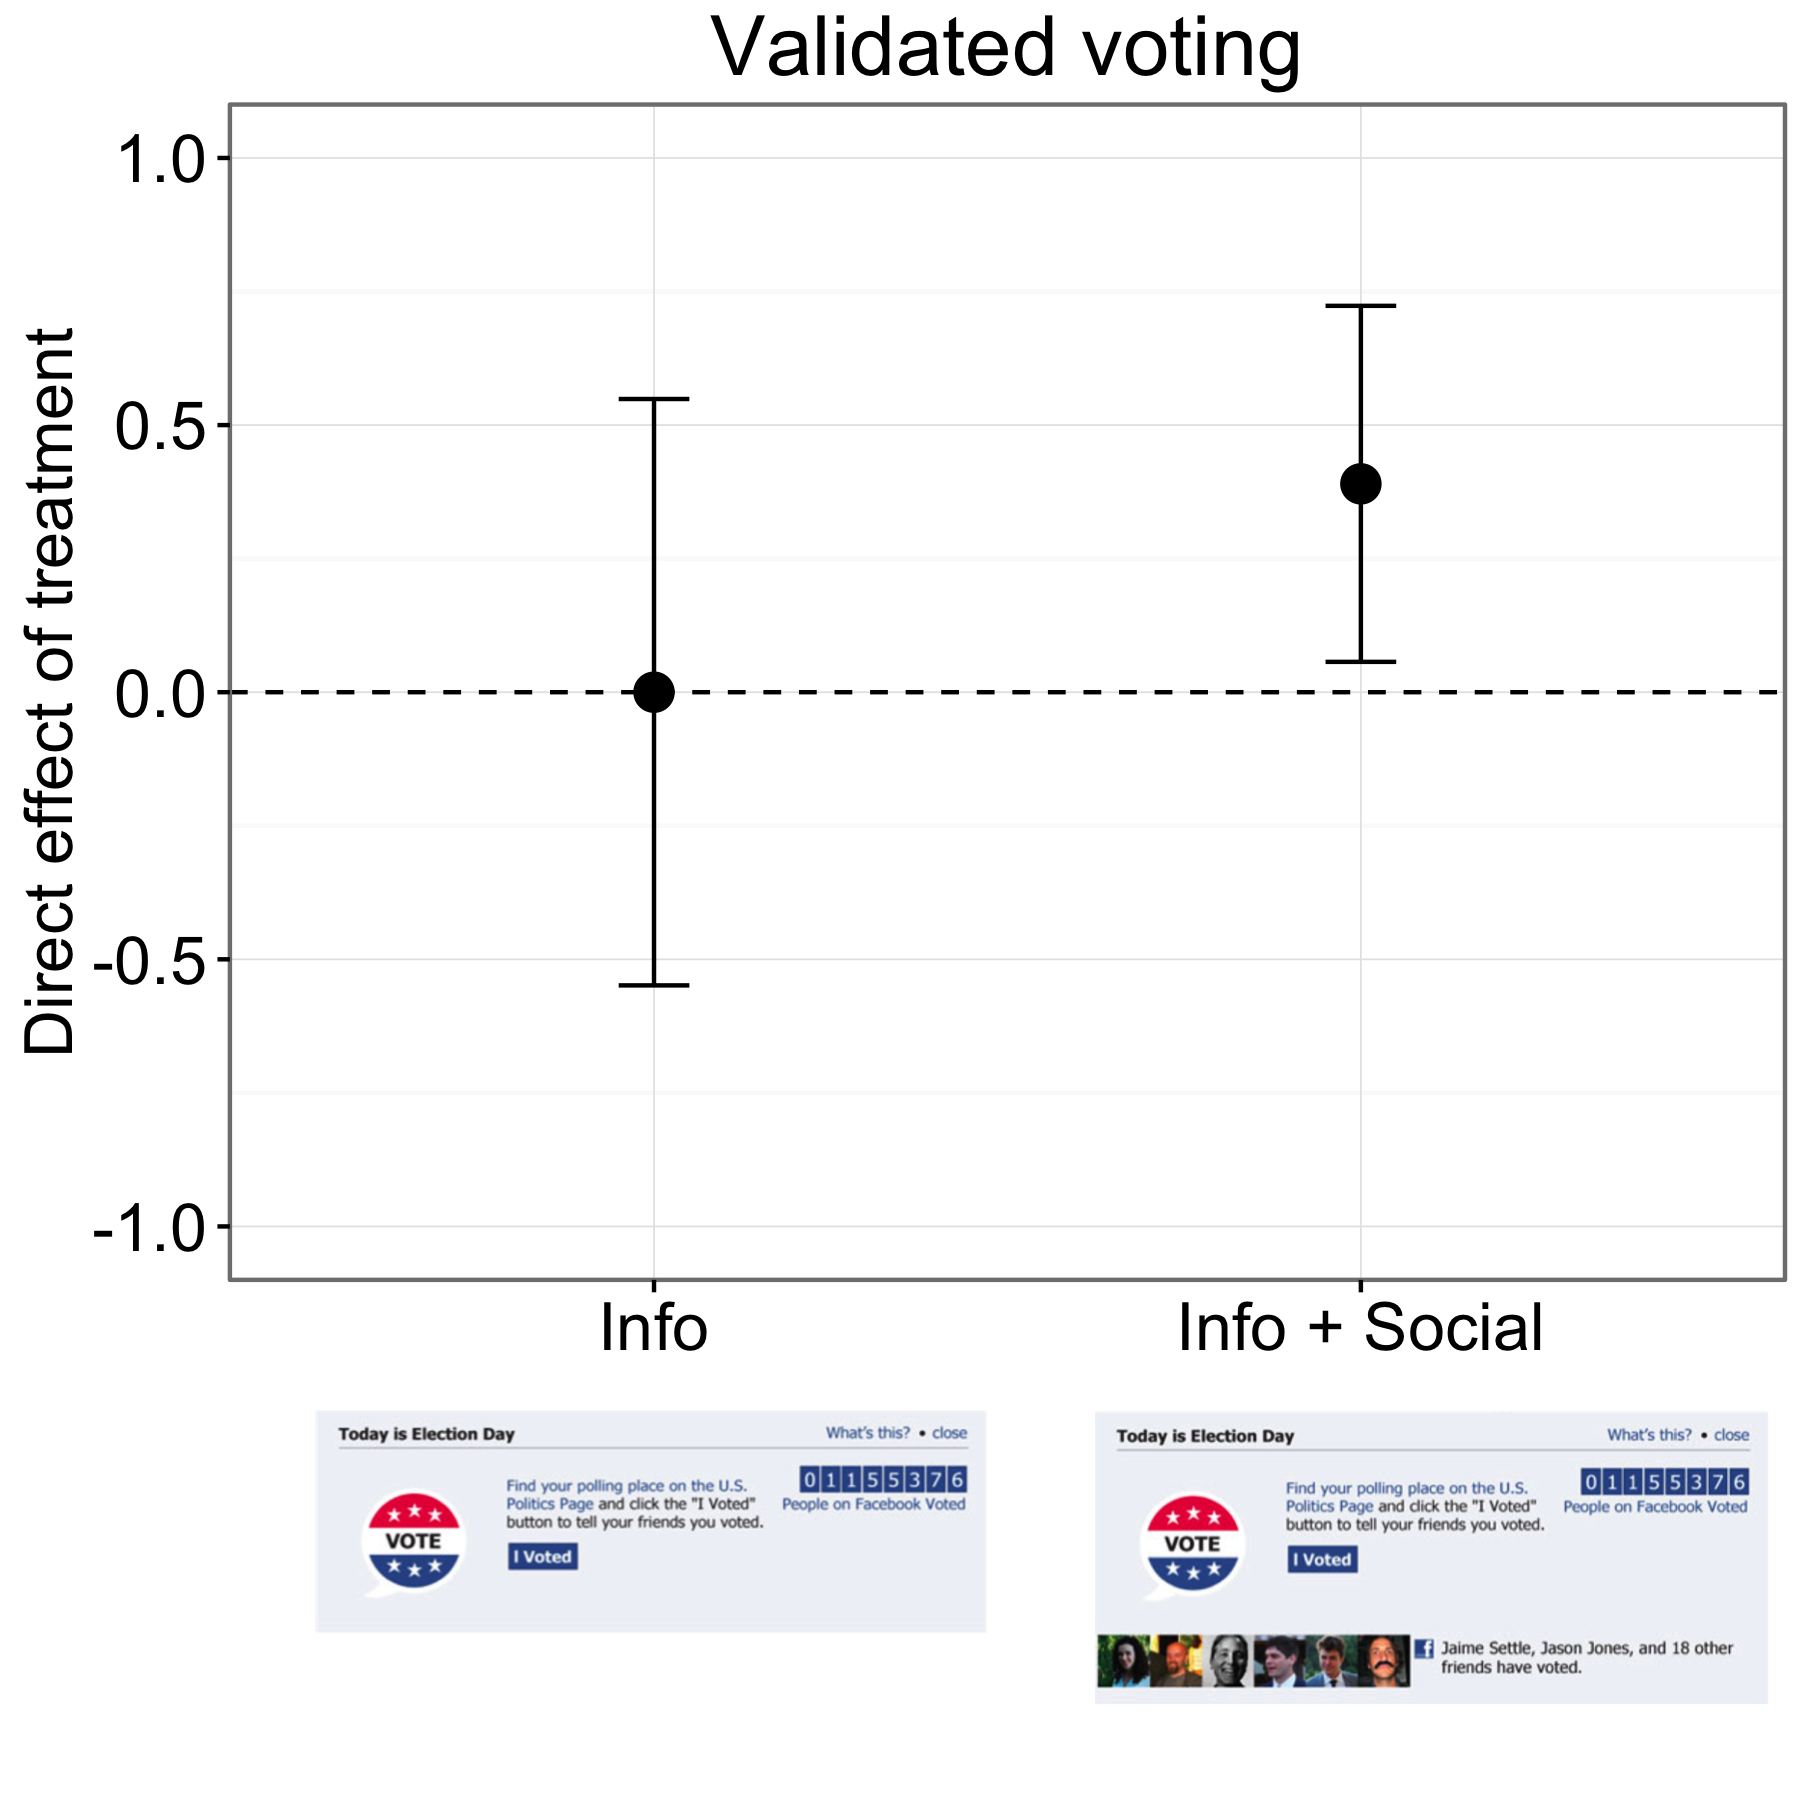 4.18. Ábra: A Facebookon megjelenő "out-the-vote" kísérlet eredményei (Bond et al., 2012). Az információs csoport résztvevői ugyanolyan arányban szavaztak, mint a kontrollcsoportban, de az Info + Social csoportban az emberek valamivel magasabb arányban szavaztak. A bárok 95% -os konfidenciaintervallumot tartalmaznak. A grafikon eredményei a körülbelül hatmillió résztvevőre vonatkoznak, akik a szavazási rekordokhoz illeszkedtek. Bond és mtsai. (2012), 1. ábra.